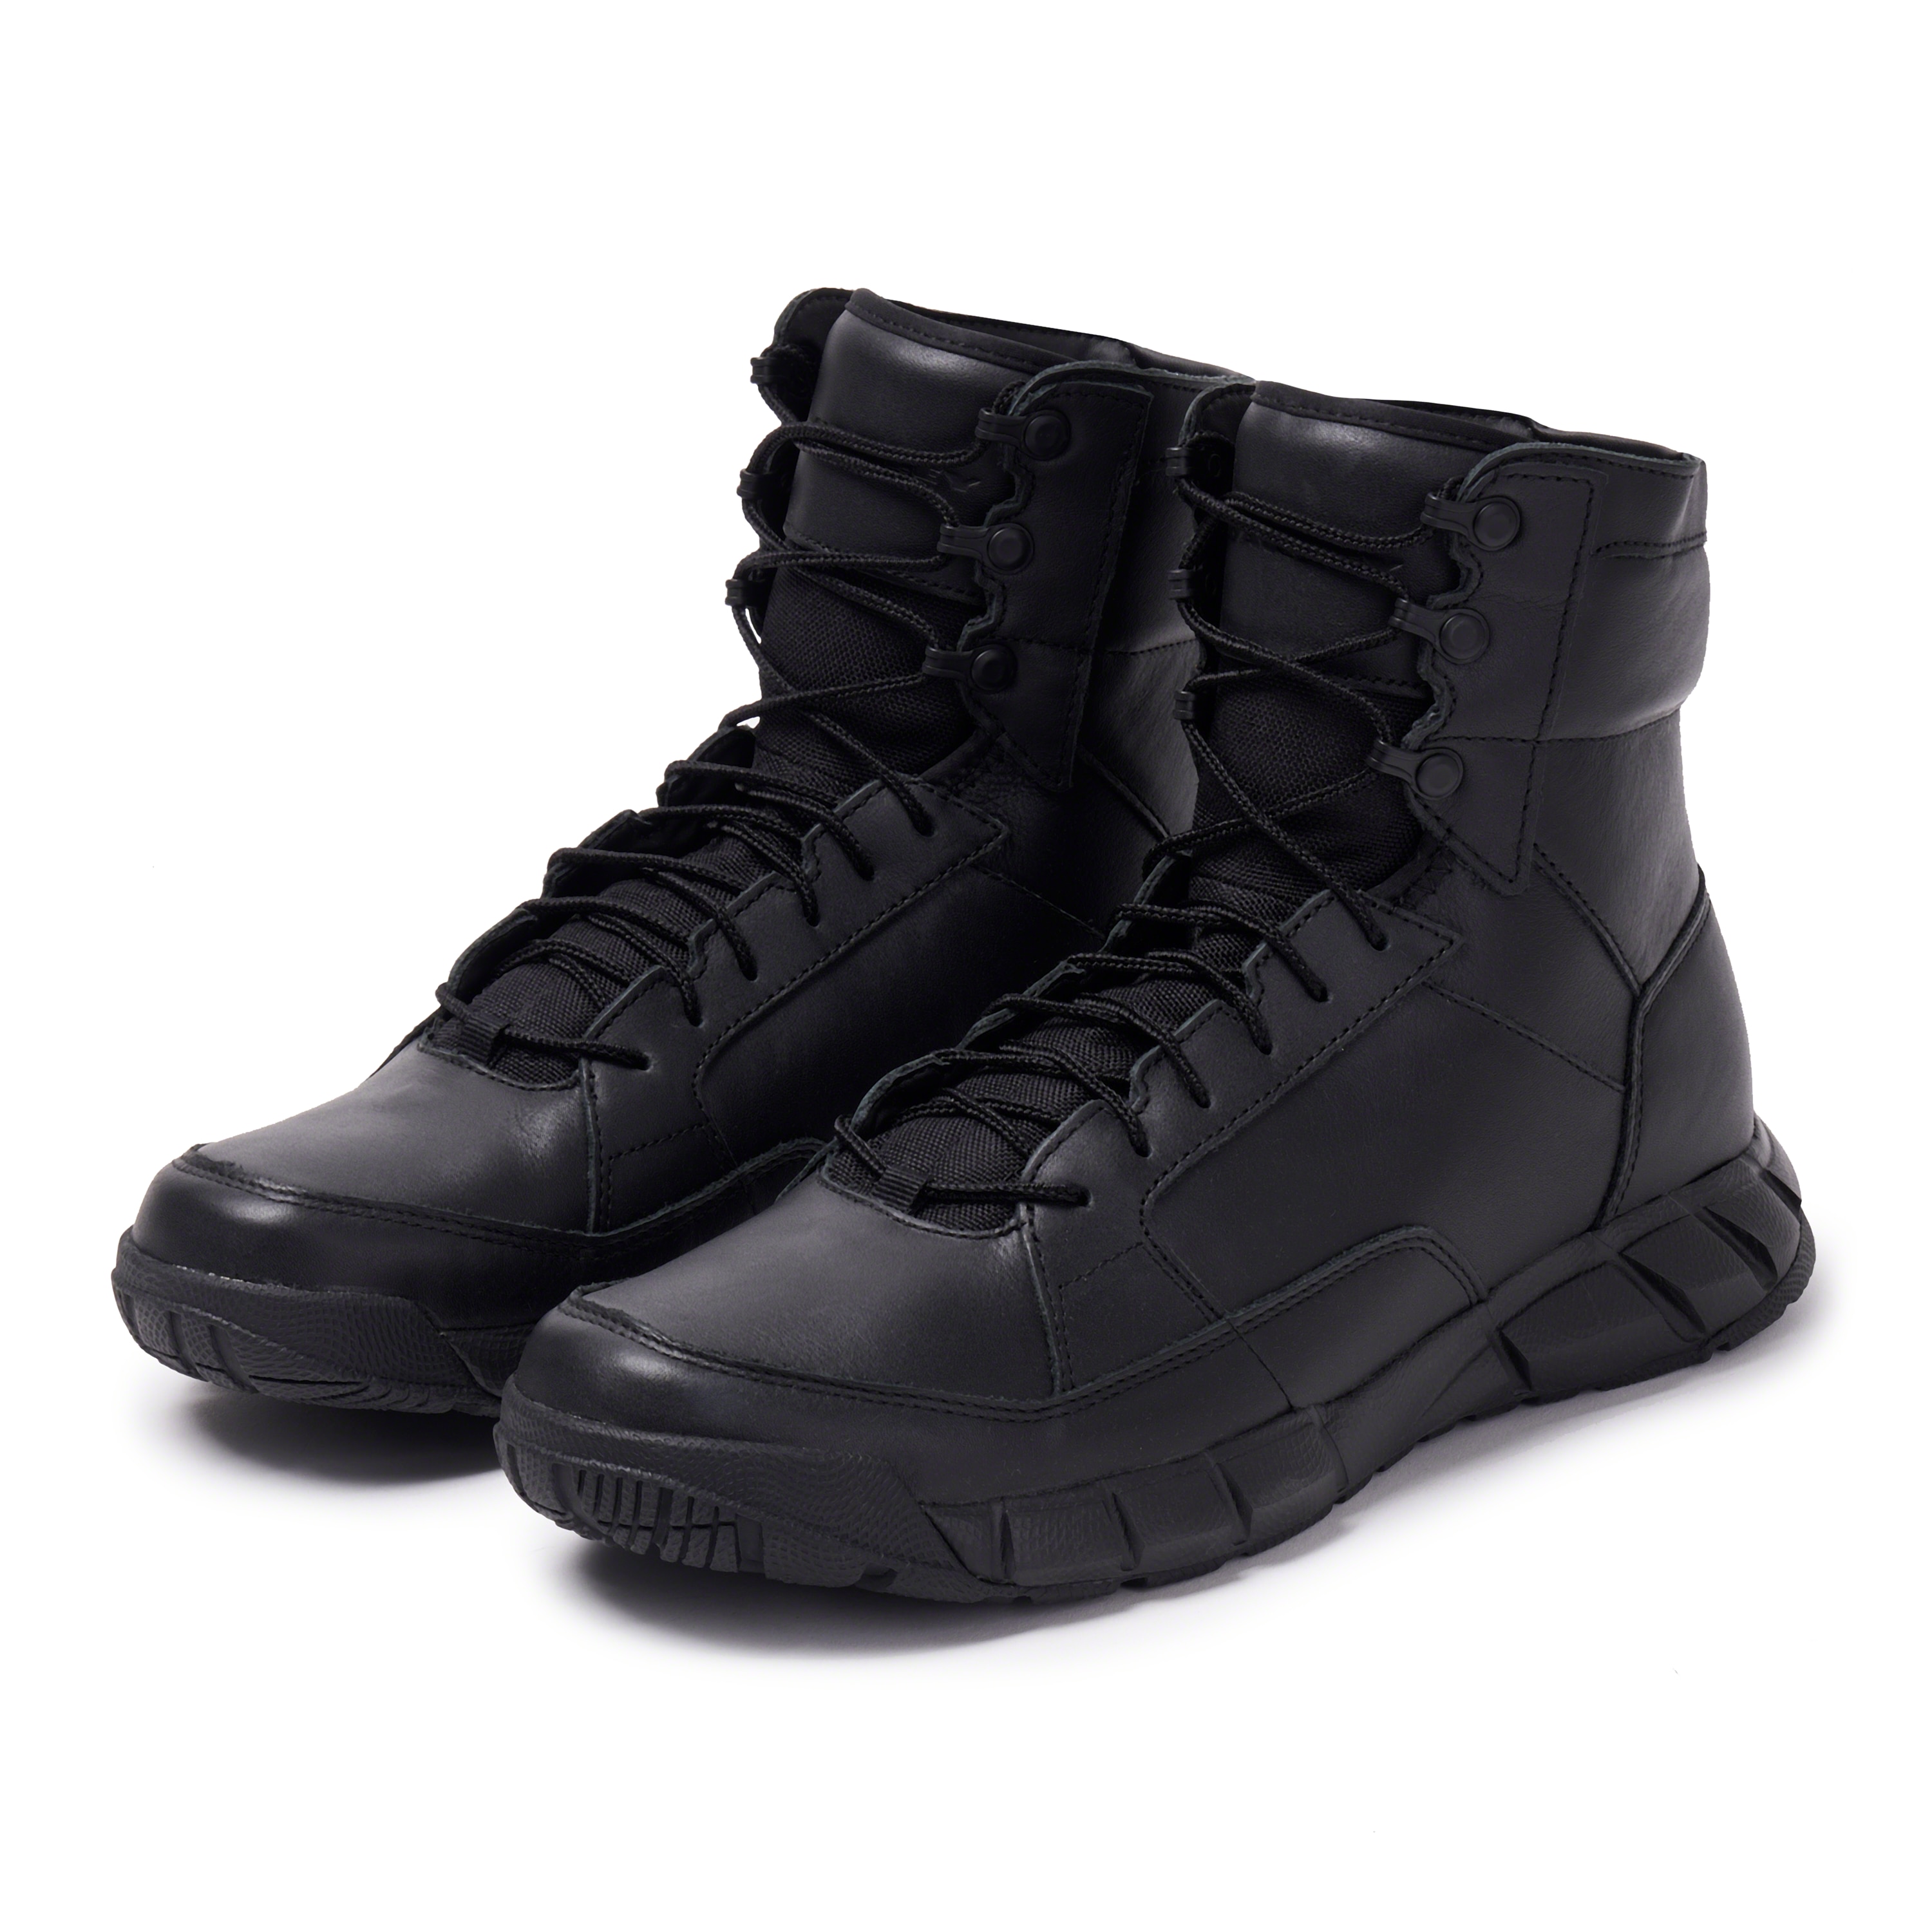 Oakley Light Assault Boot Leather 